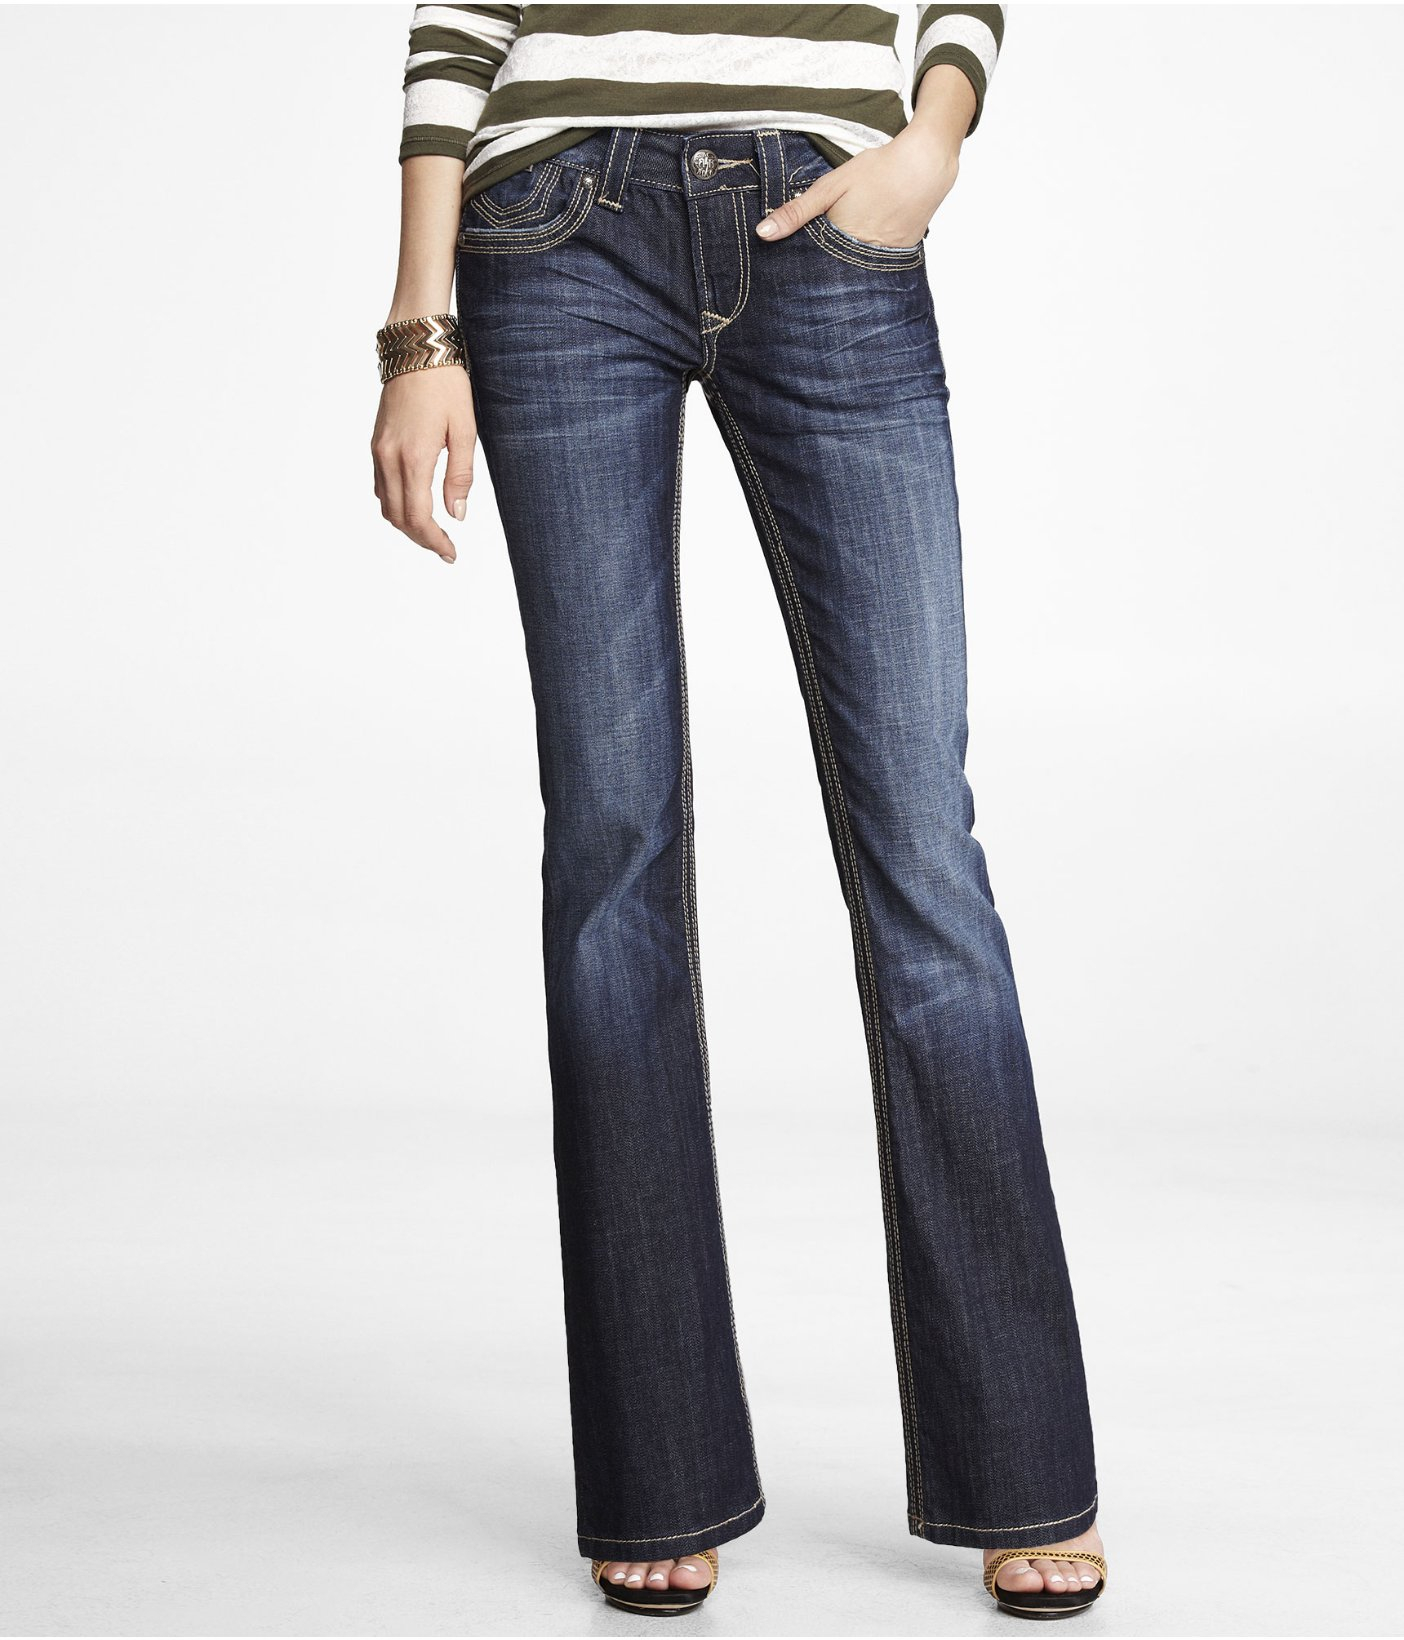 express rerock skinny jeans